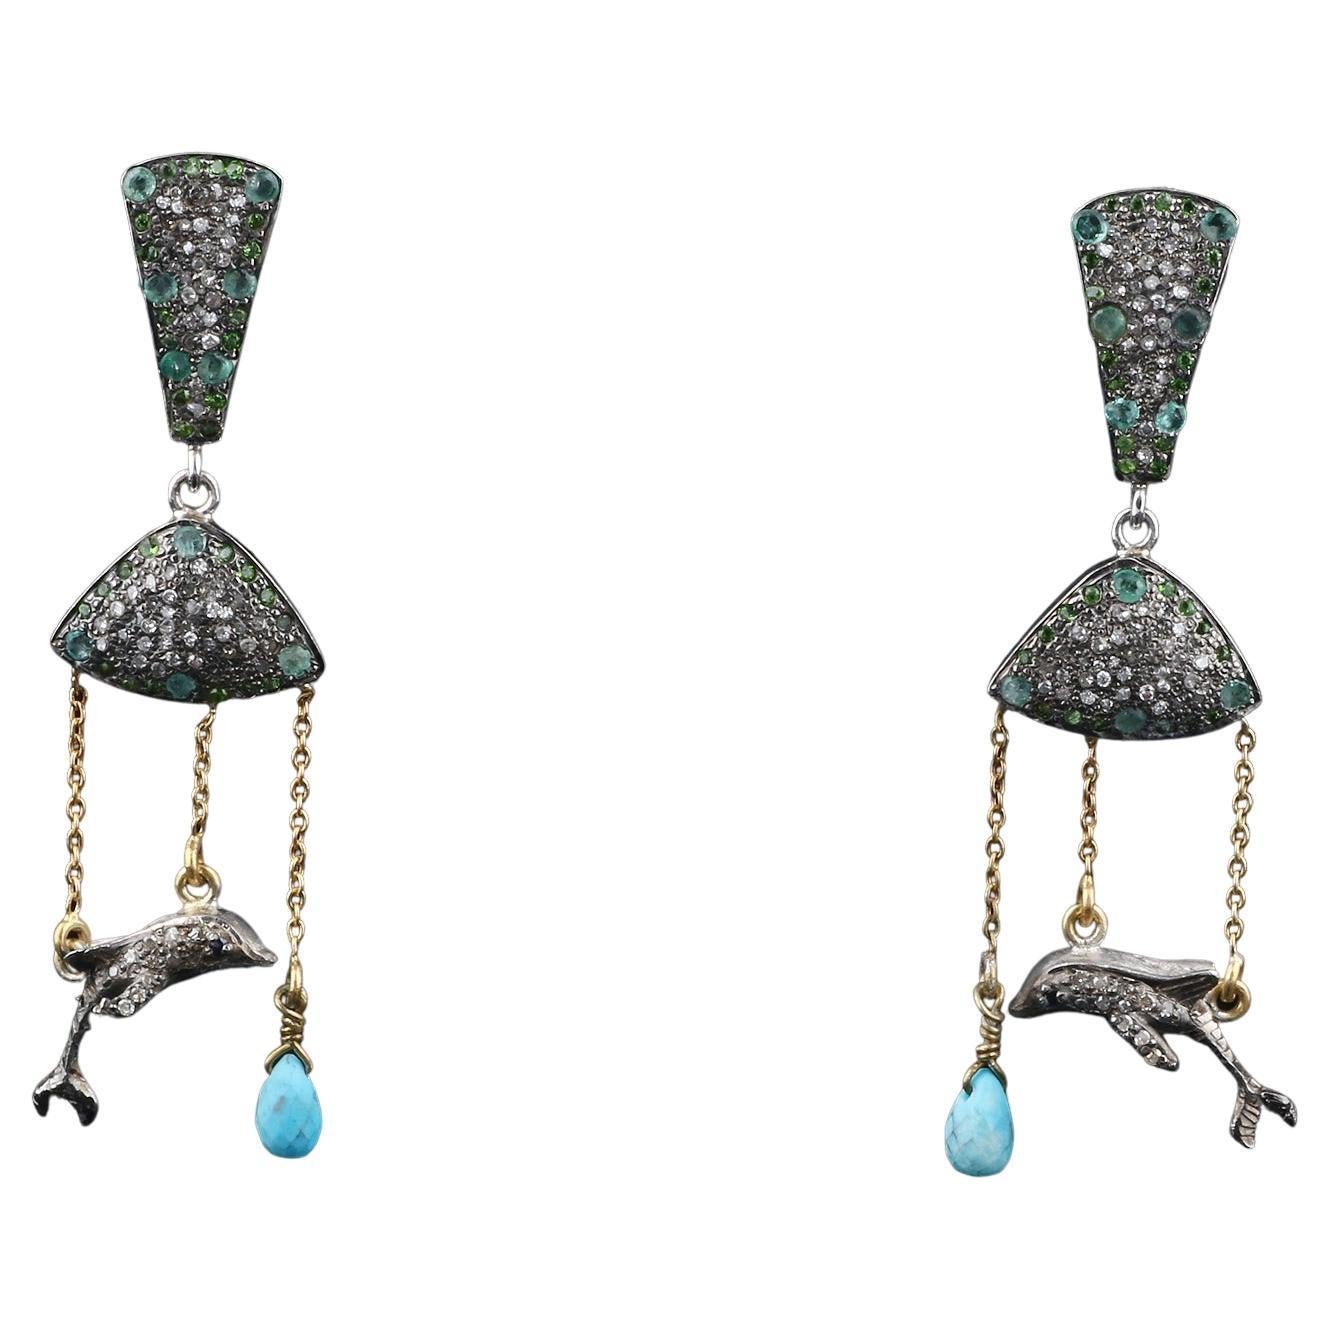 Pendants d'oreilles de style victorien en argent avec diamants et émeraudes turquoises